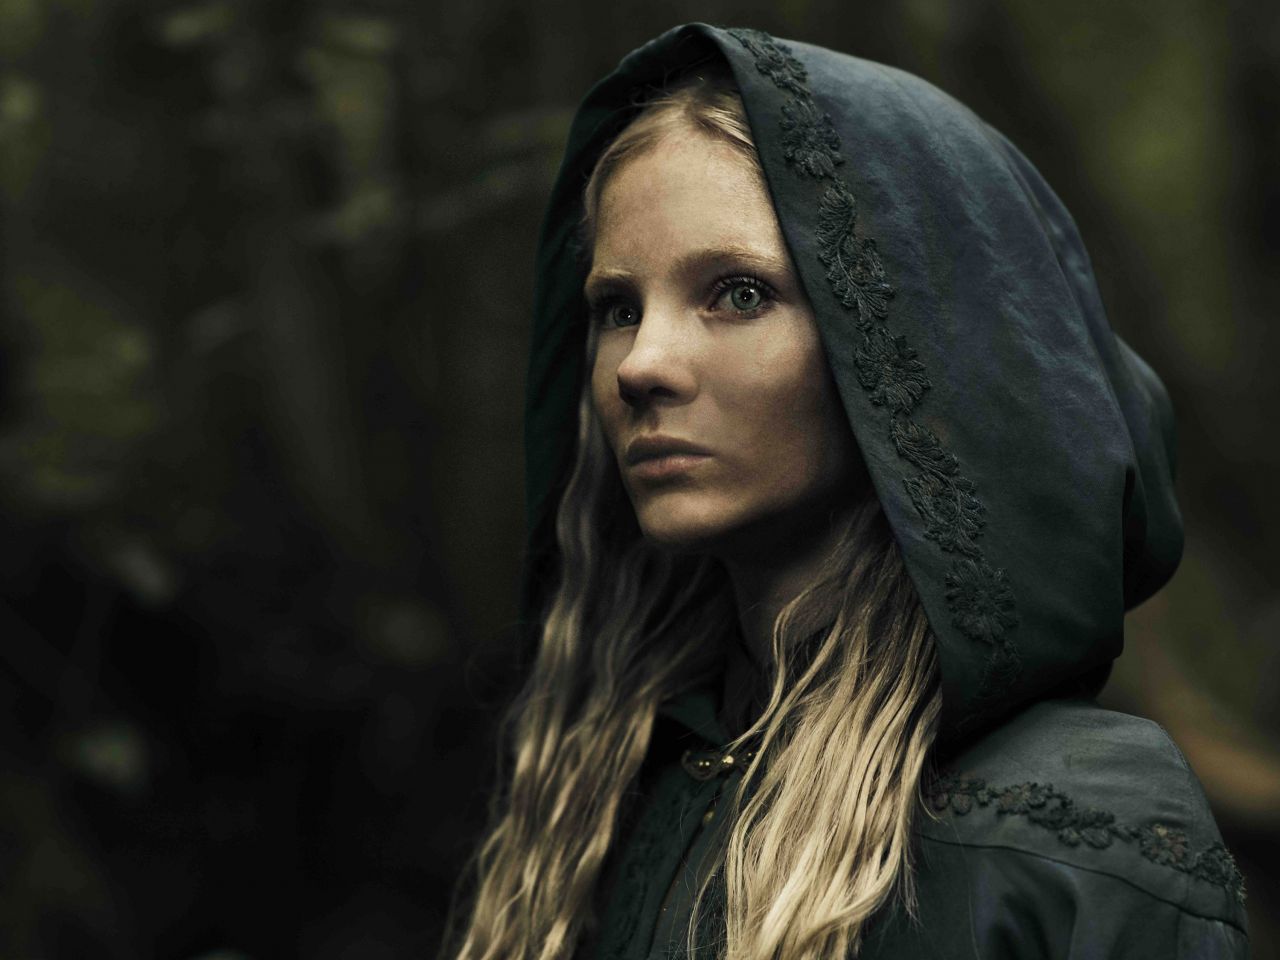 Freya Allan “the Witcher” Season 1 Promoshoots 2019 Celebmafia